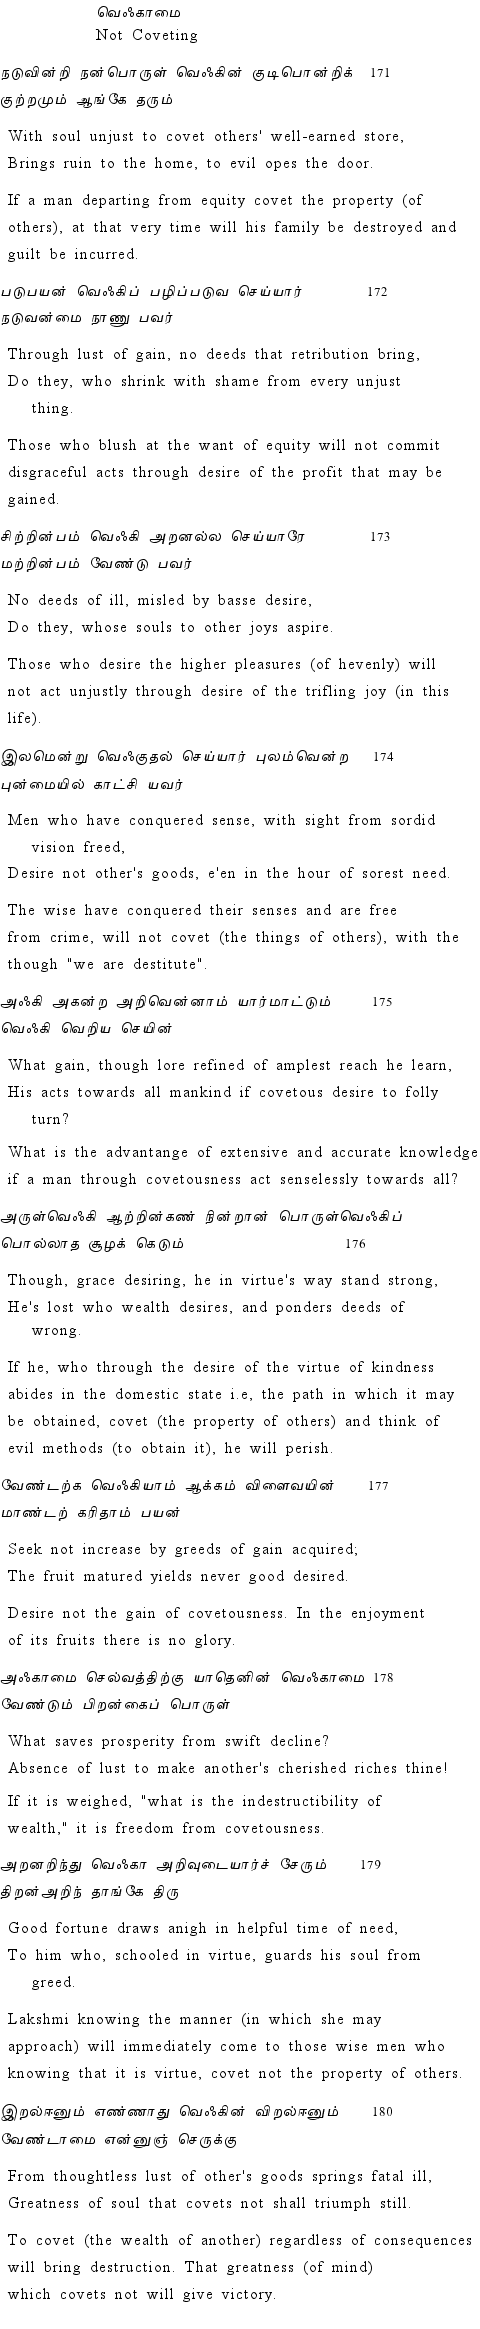 Text of Adhikaram 18